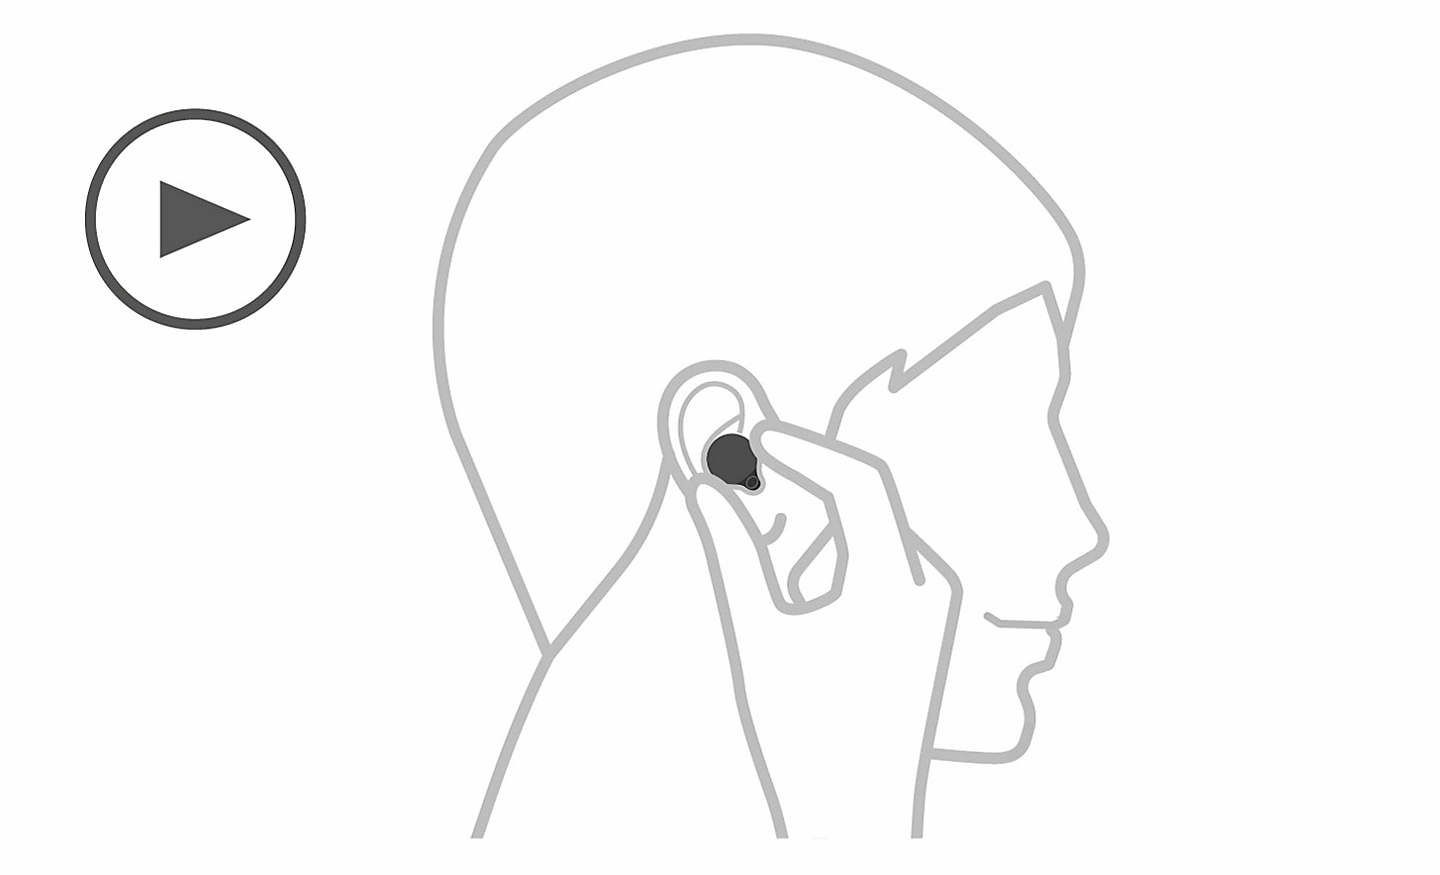 Ilustracija glave, lijevo se nalazi ikona reprodukcije i ruka koja stavlja slušalicu u uho